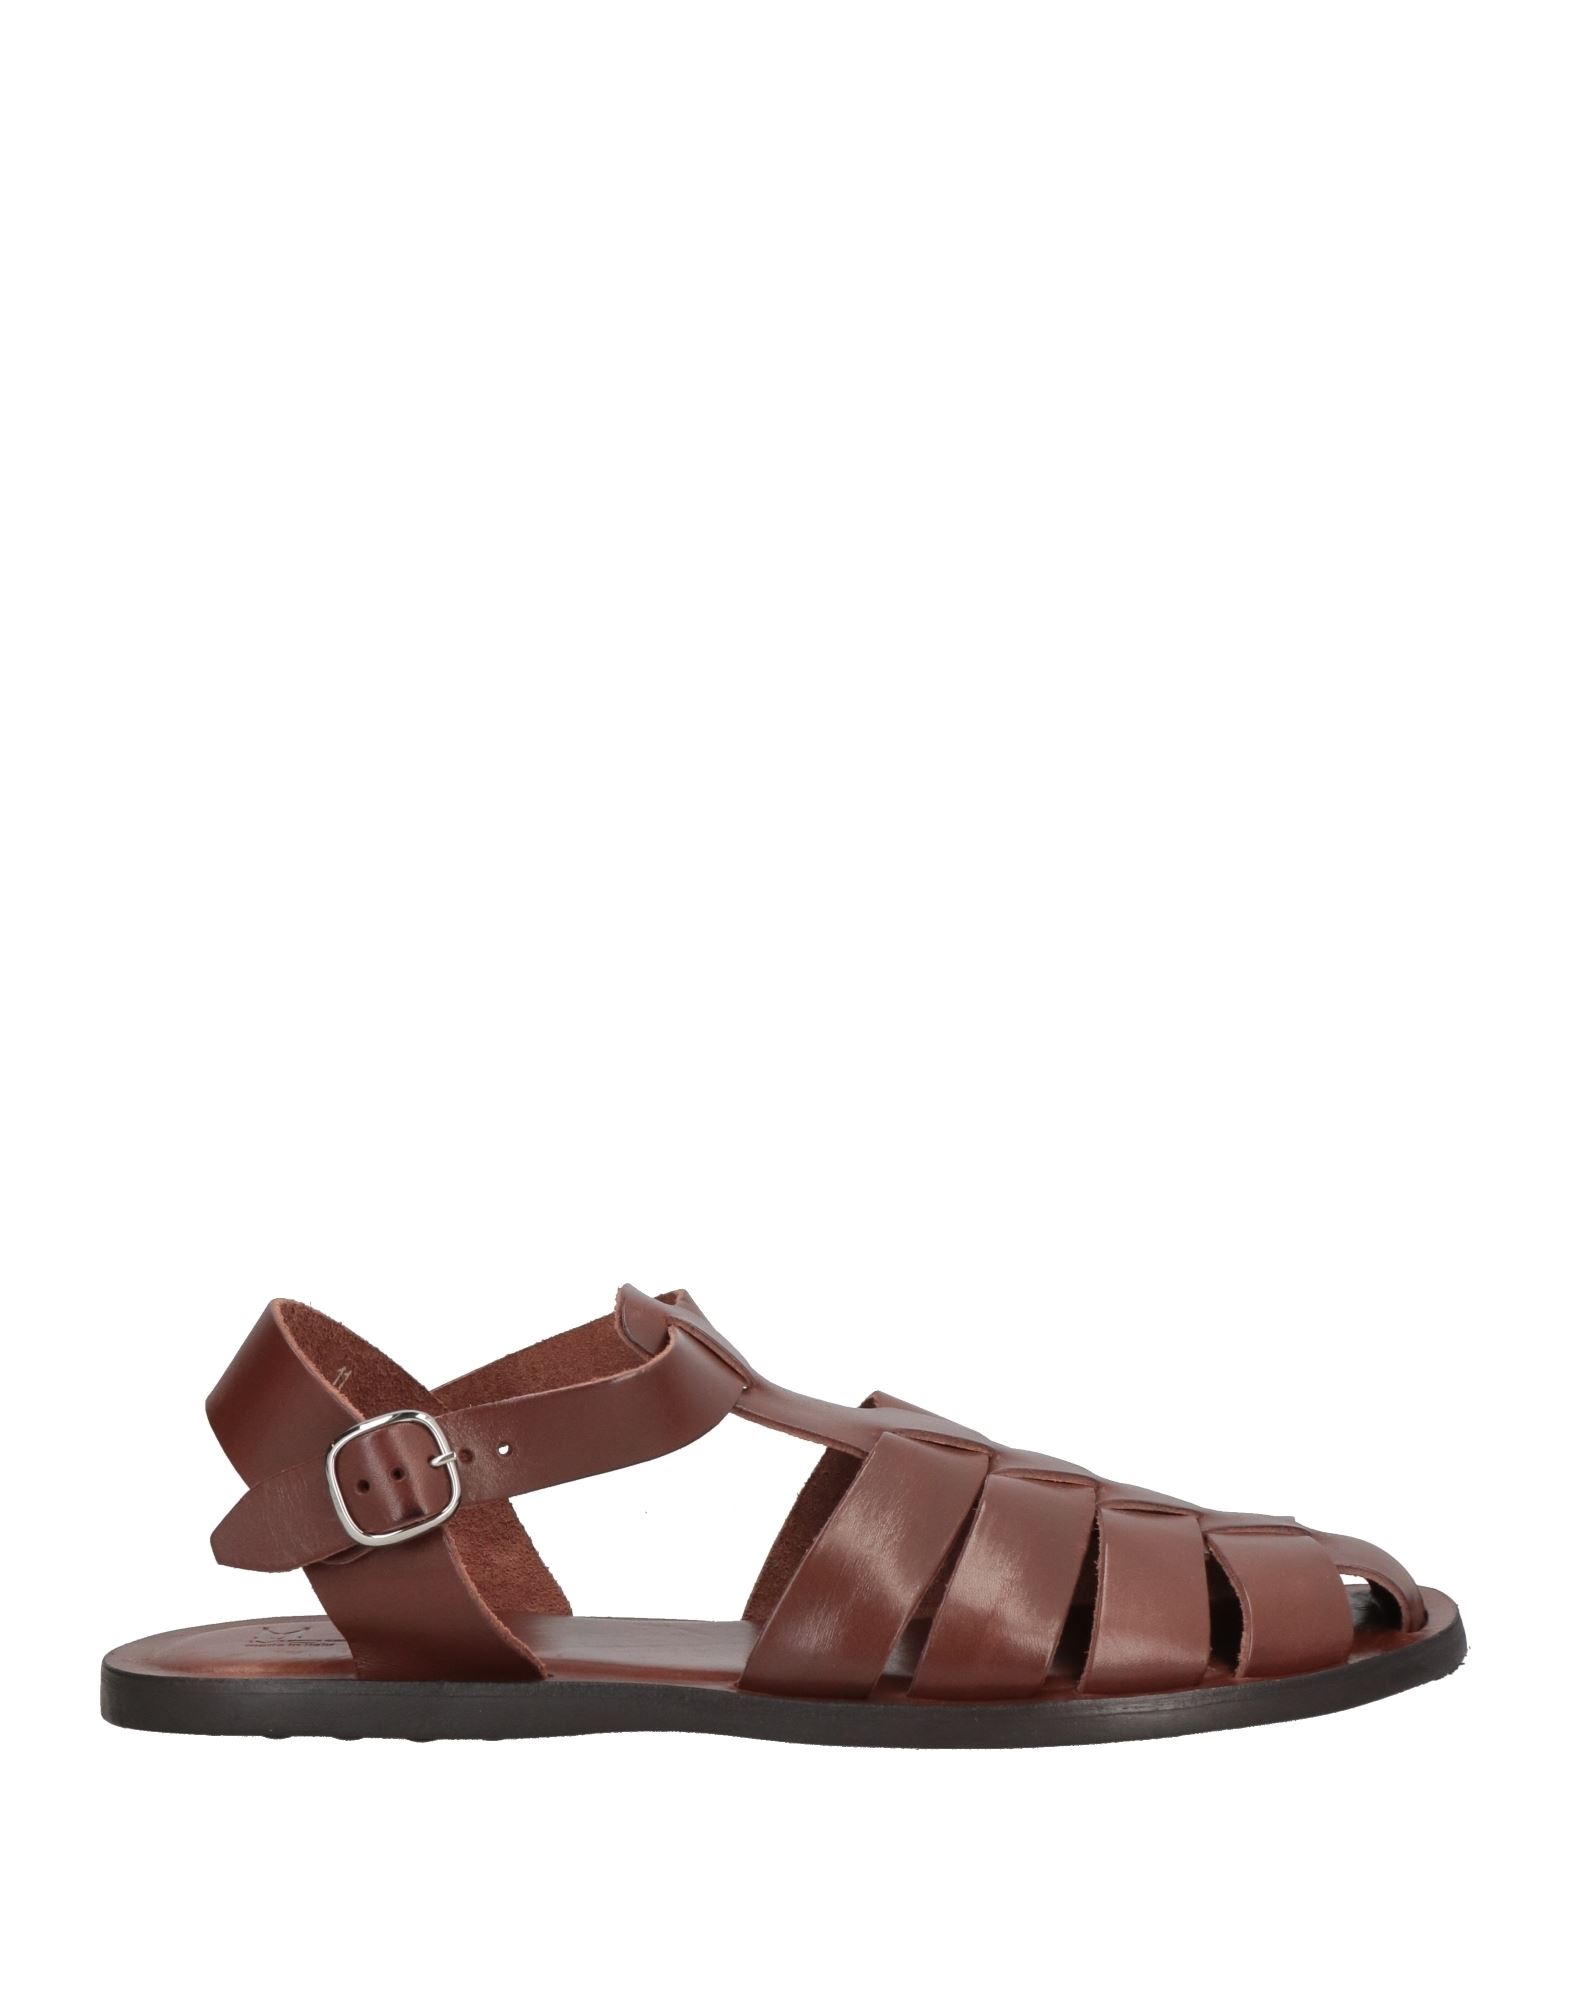 Moreschi Sandals In Brown